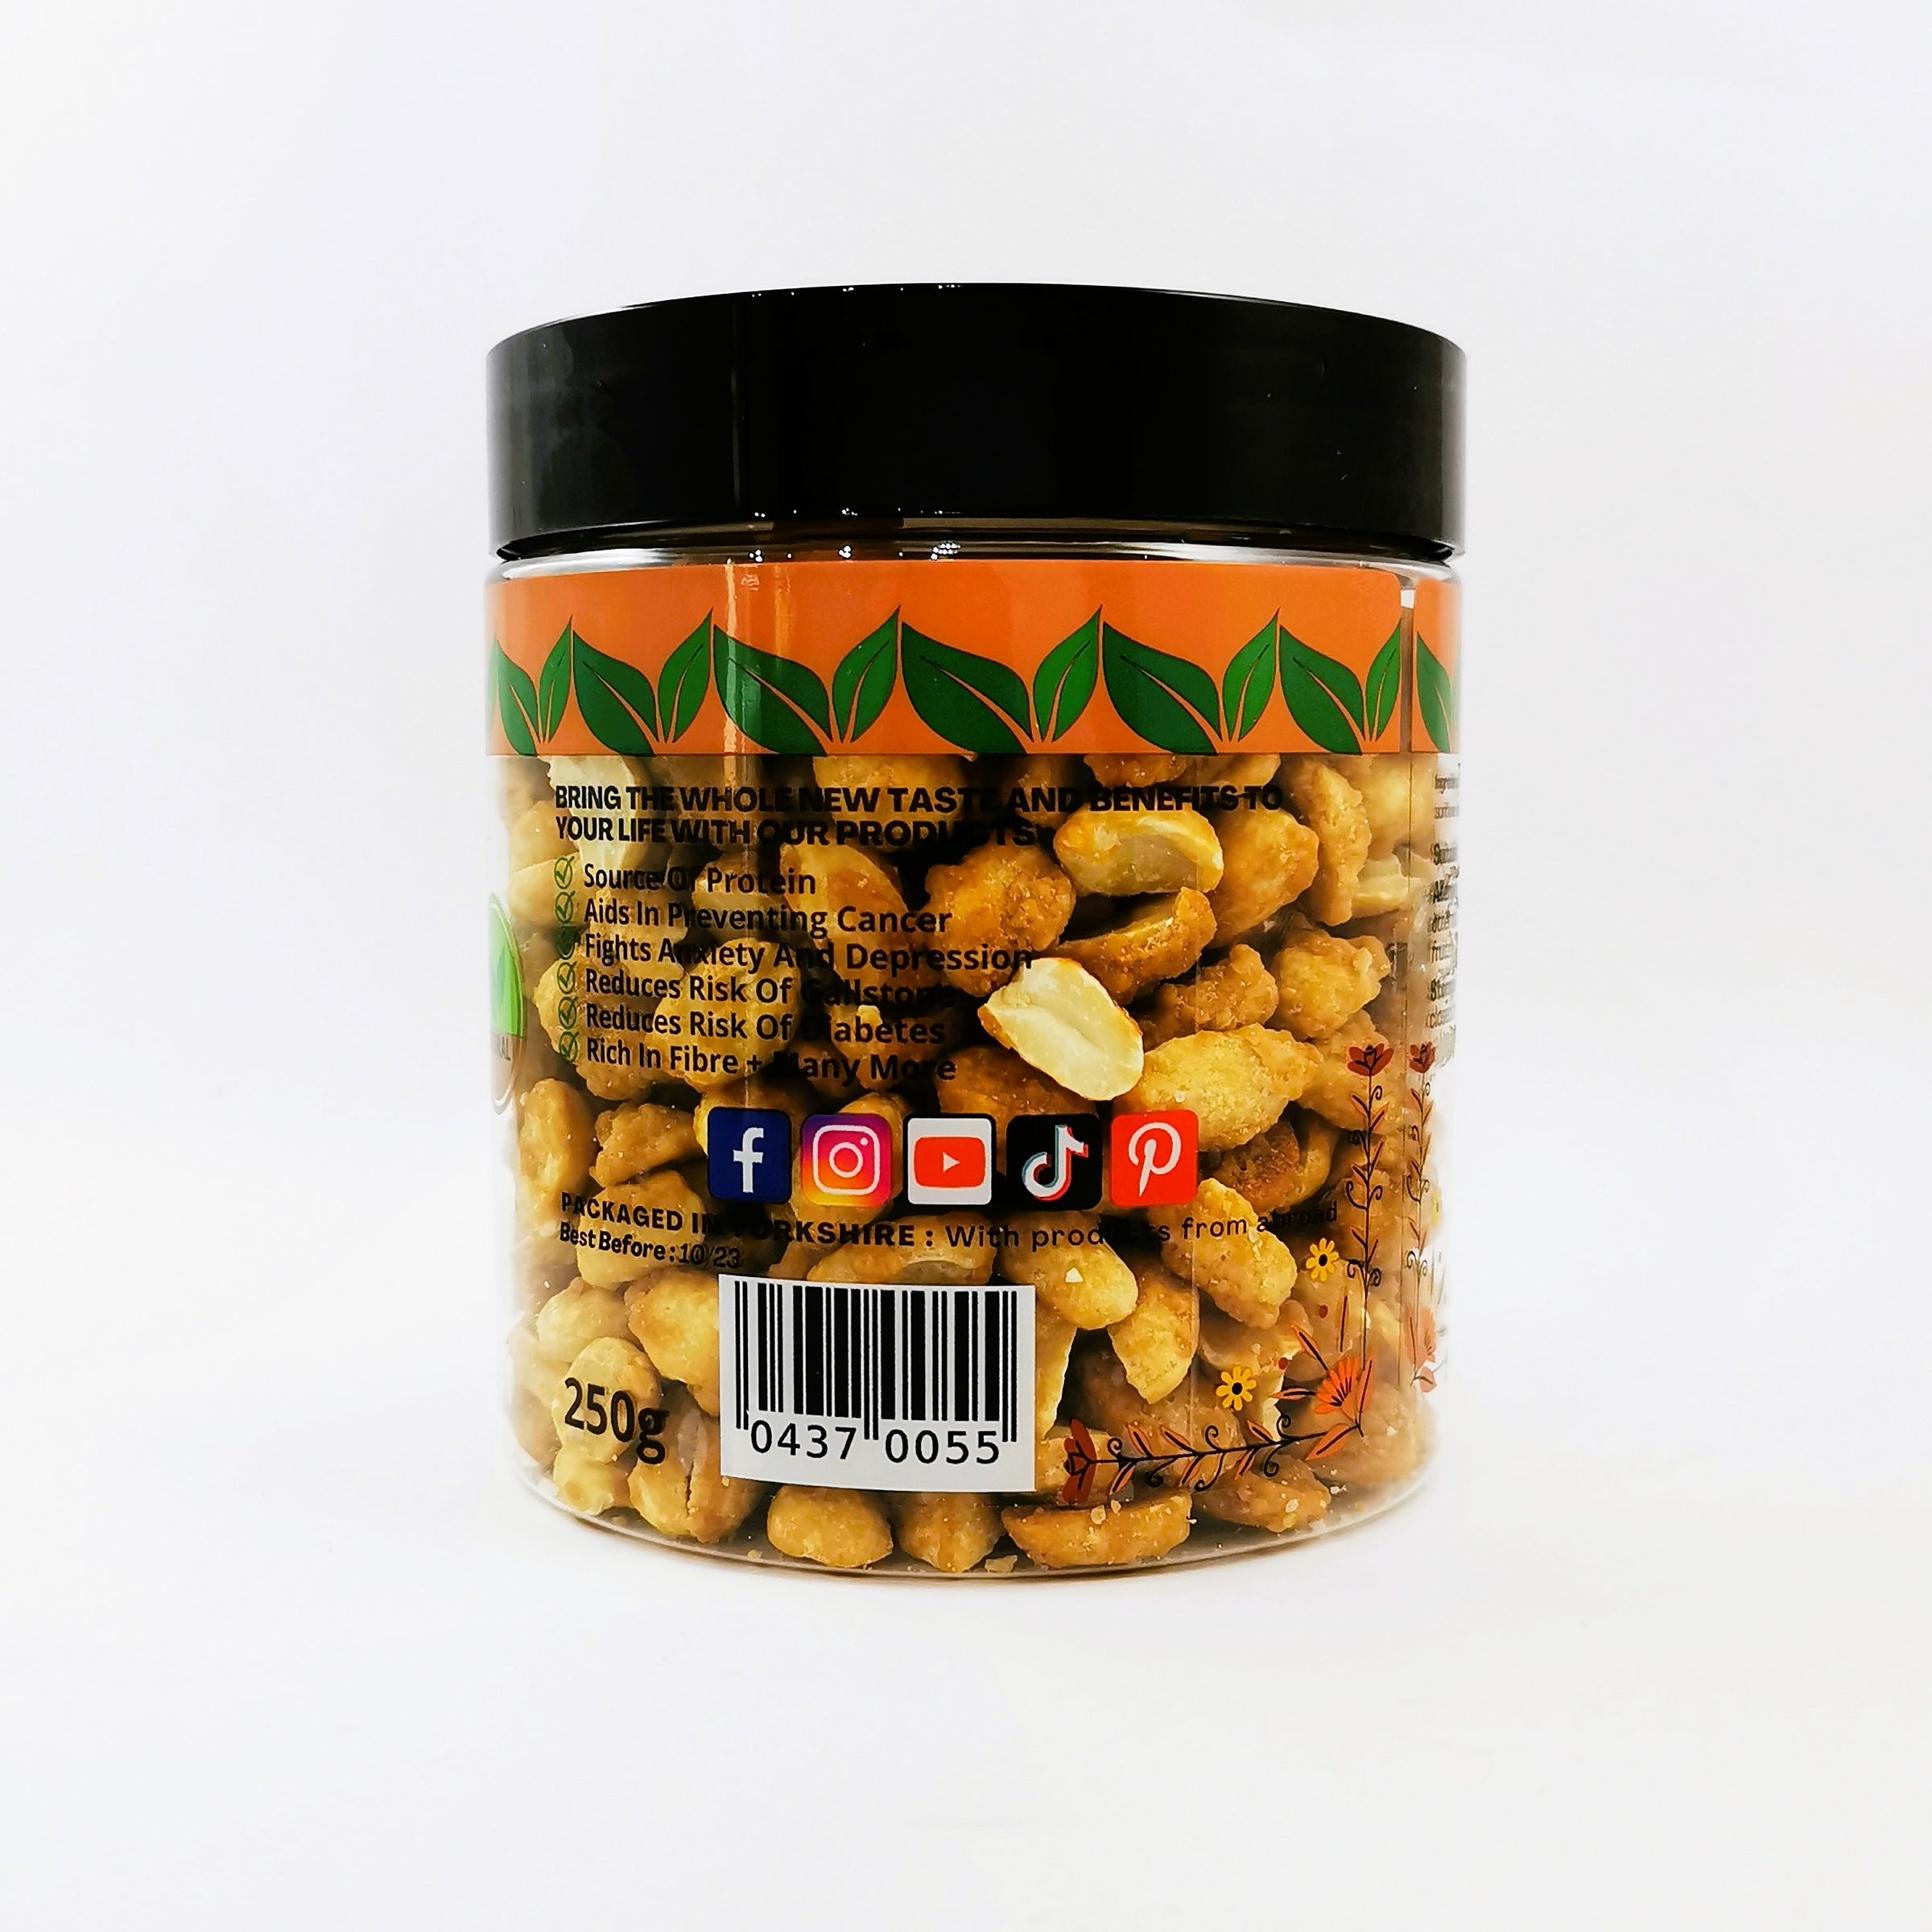 TASTE Honey Roasted Peanuts –